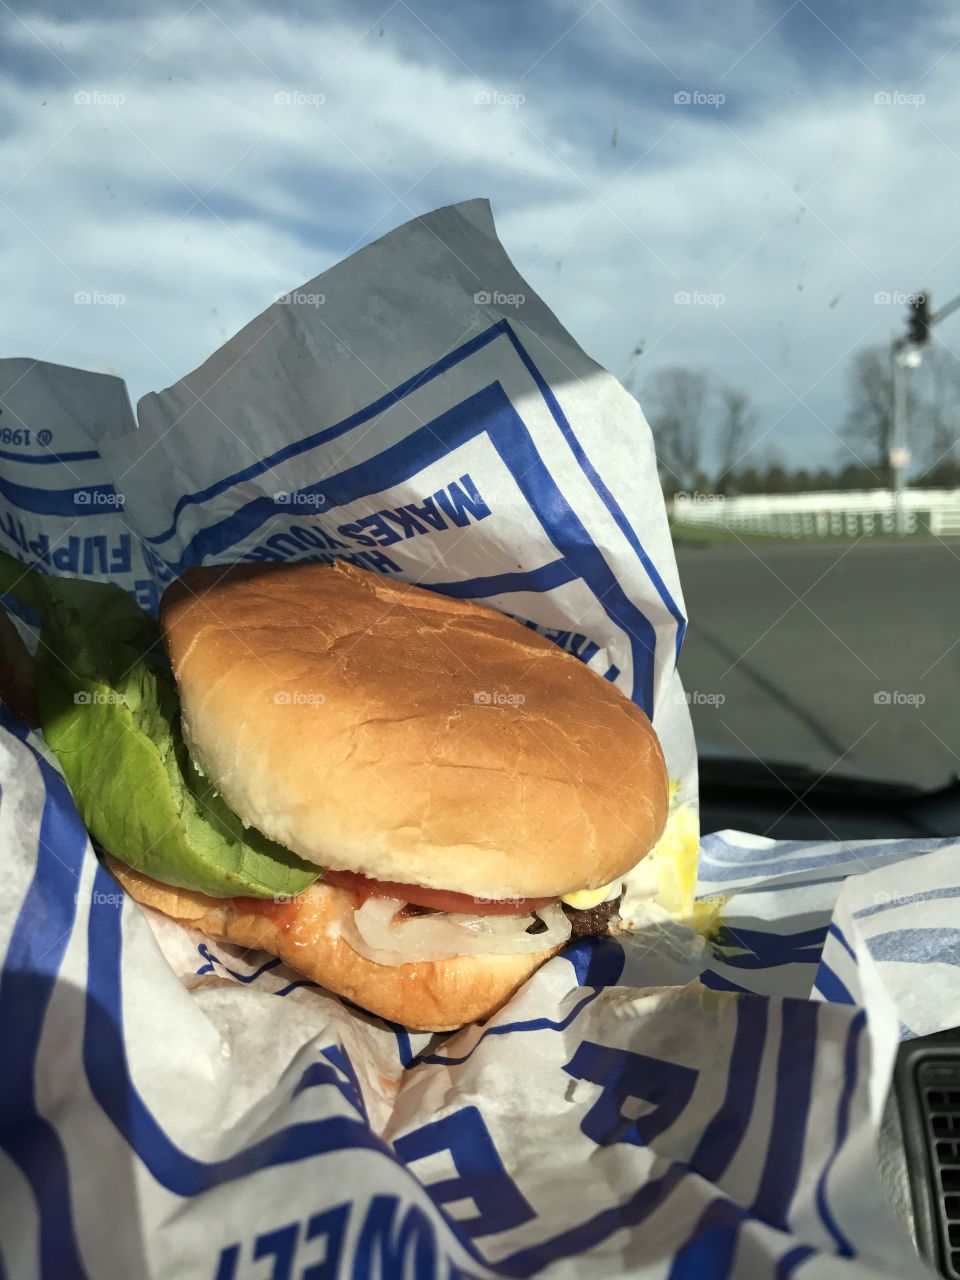 Kewpee burger